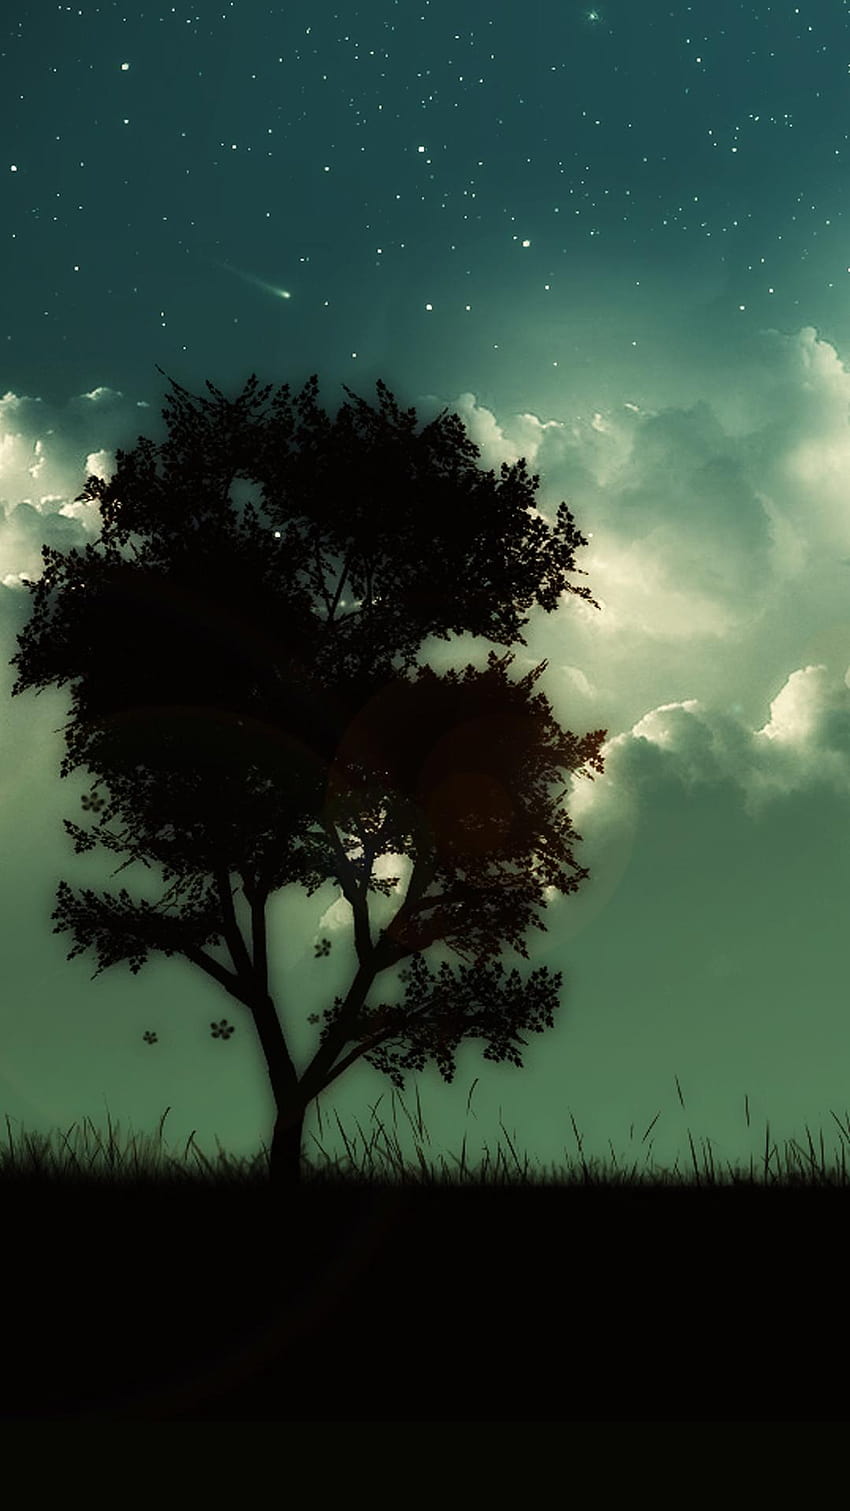 Gwiaździsty Błyszczący Pochmurny Niebo Samotne drzewo Noc Wzgórze iPhone 8, samotne drzewo ze światłami Tapeta na telefon HD